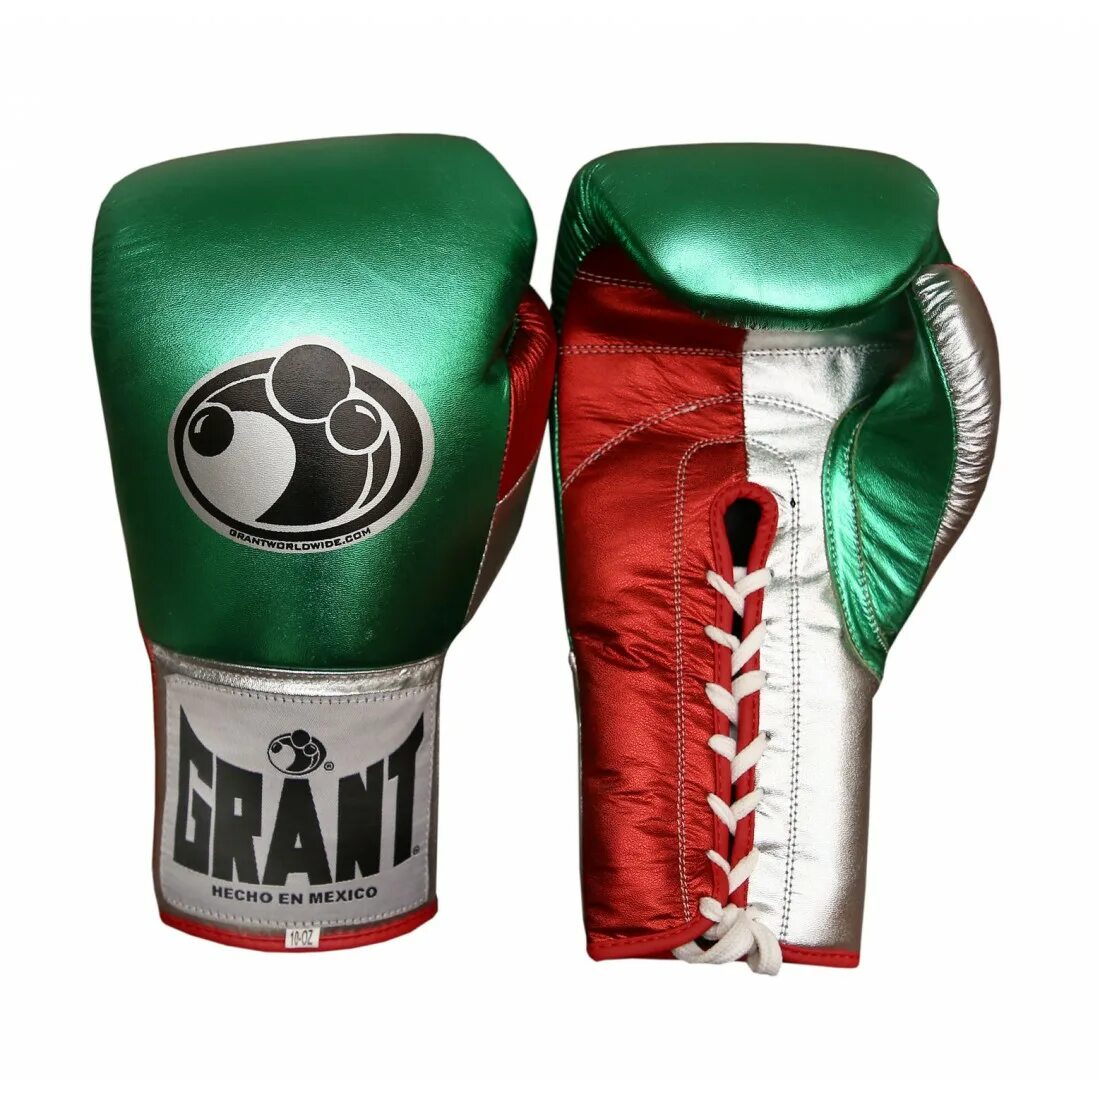 Боксерские перчатки купить в москве. Grant professional Boxing Gloves 14oz. Боксерские перчатки Grant TMT 16 oz. Боксерские перчатки Boxing Gloves (Pro-001-l). Перчатки Grant Boxing.